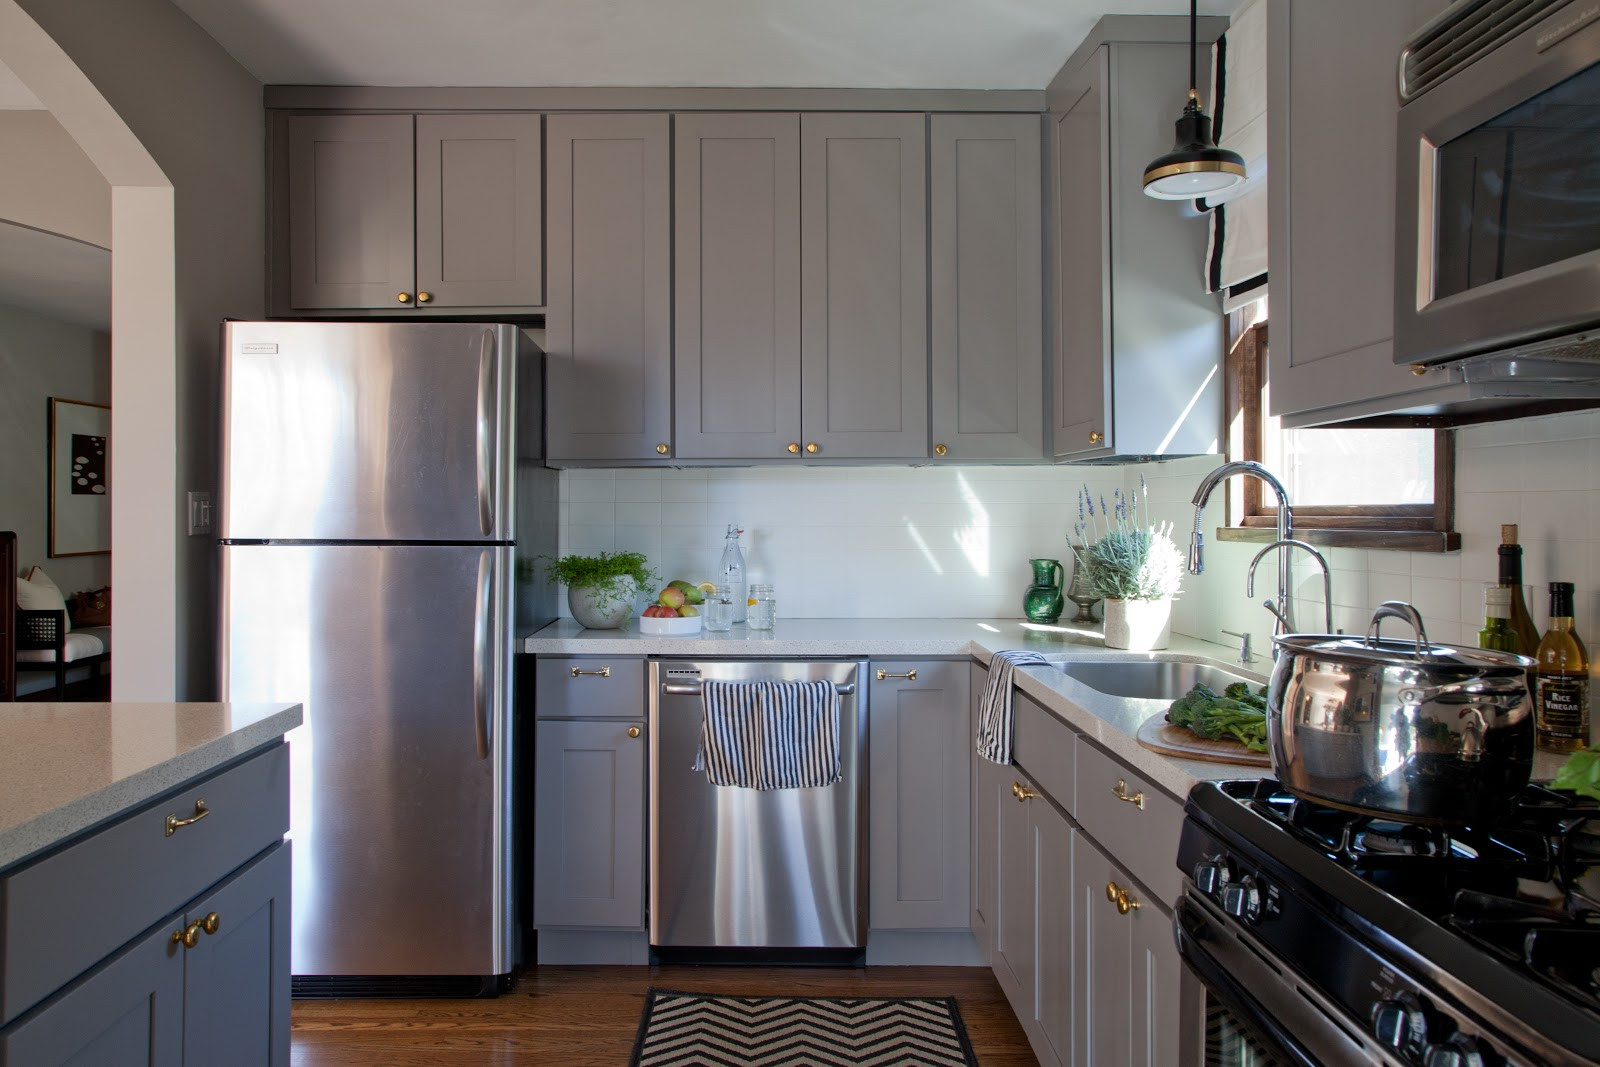 Kitchen Cabinets Design Ideas
 15 Inspiring Grey Kitchen Cabinet Design Ideas